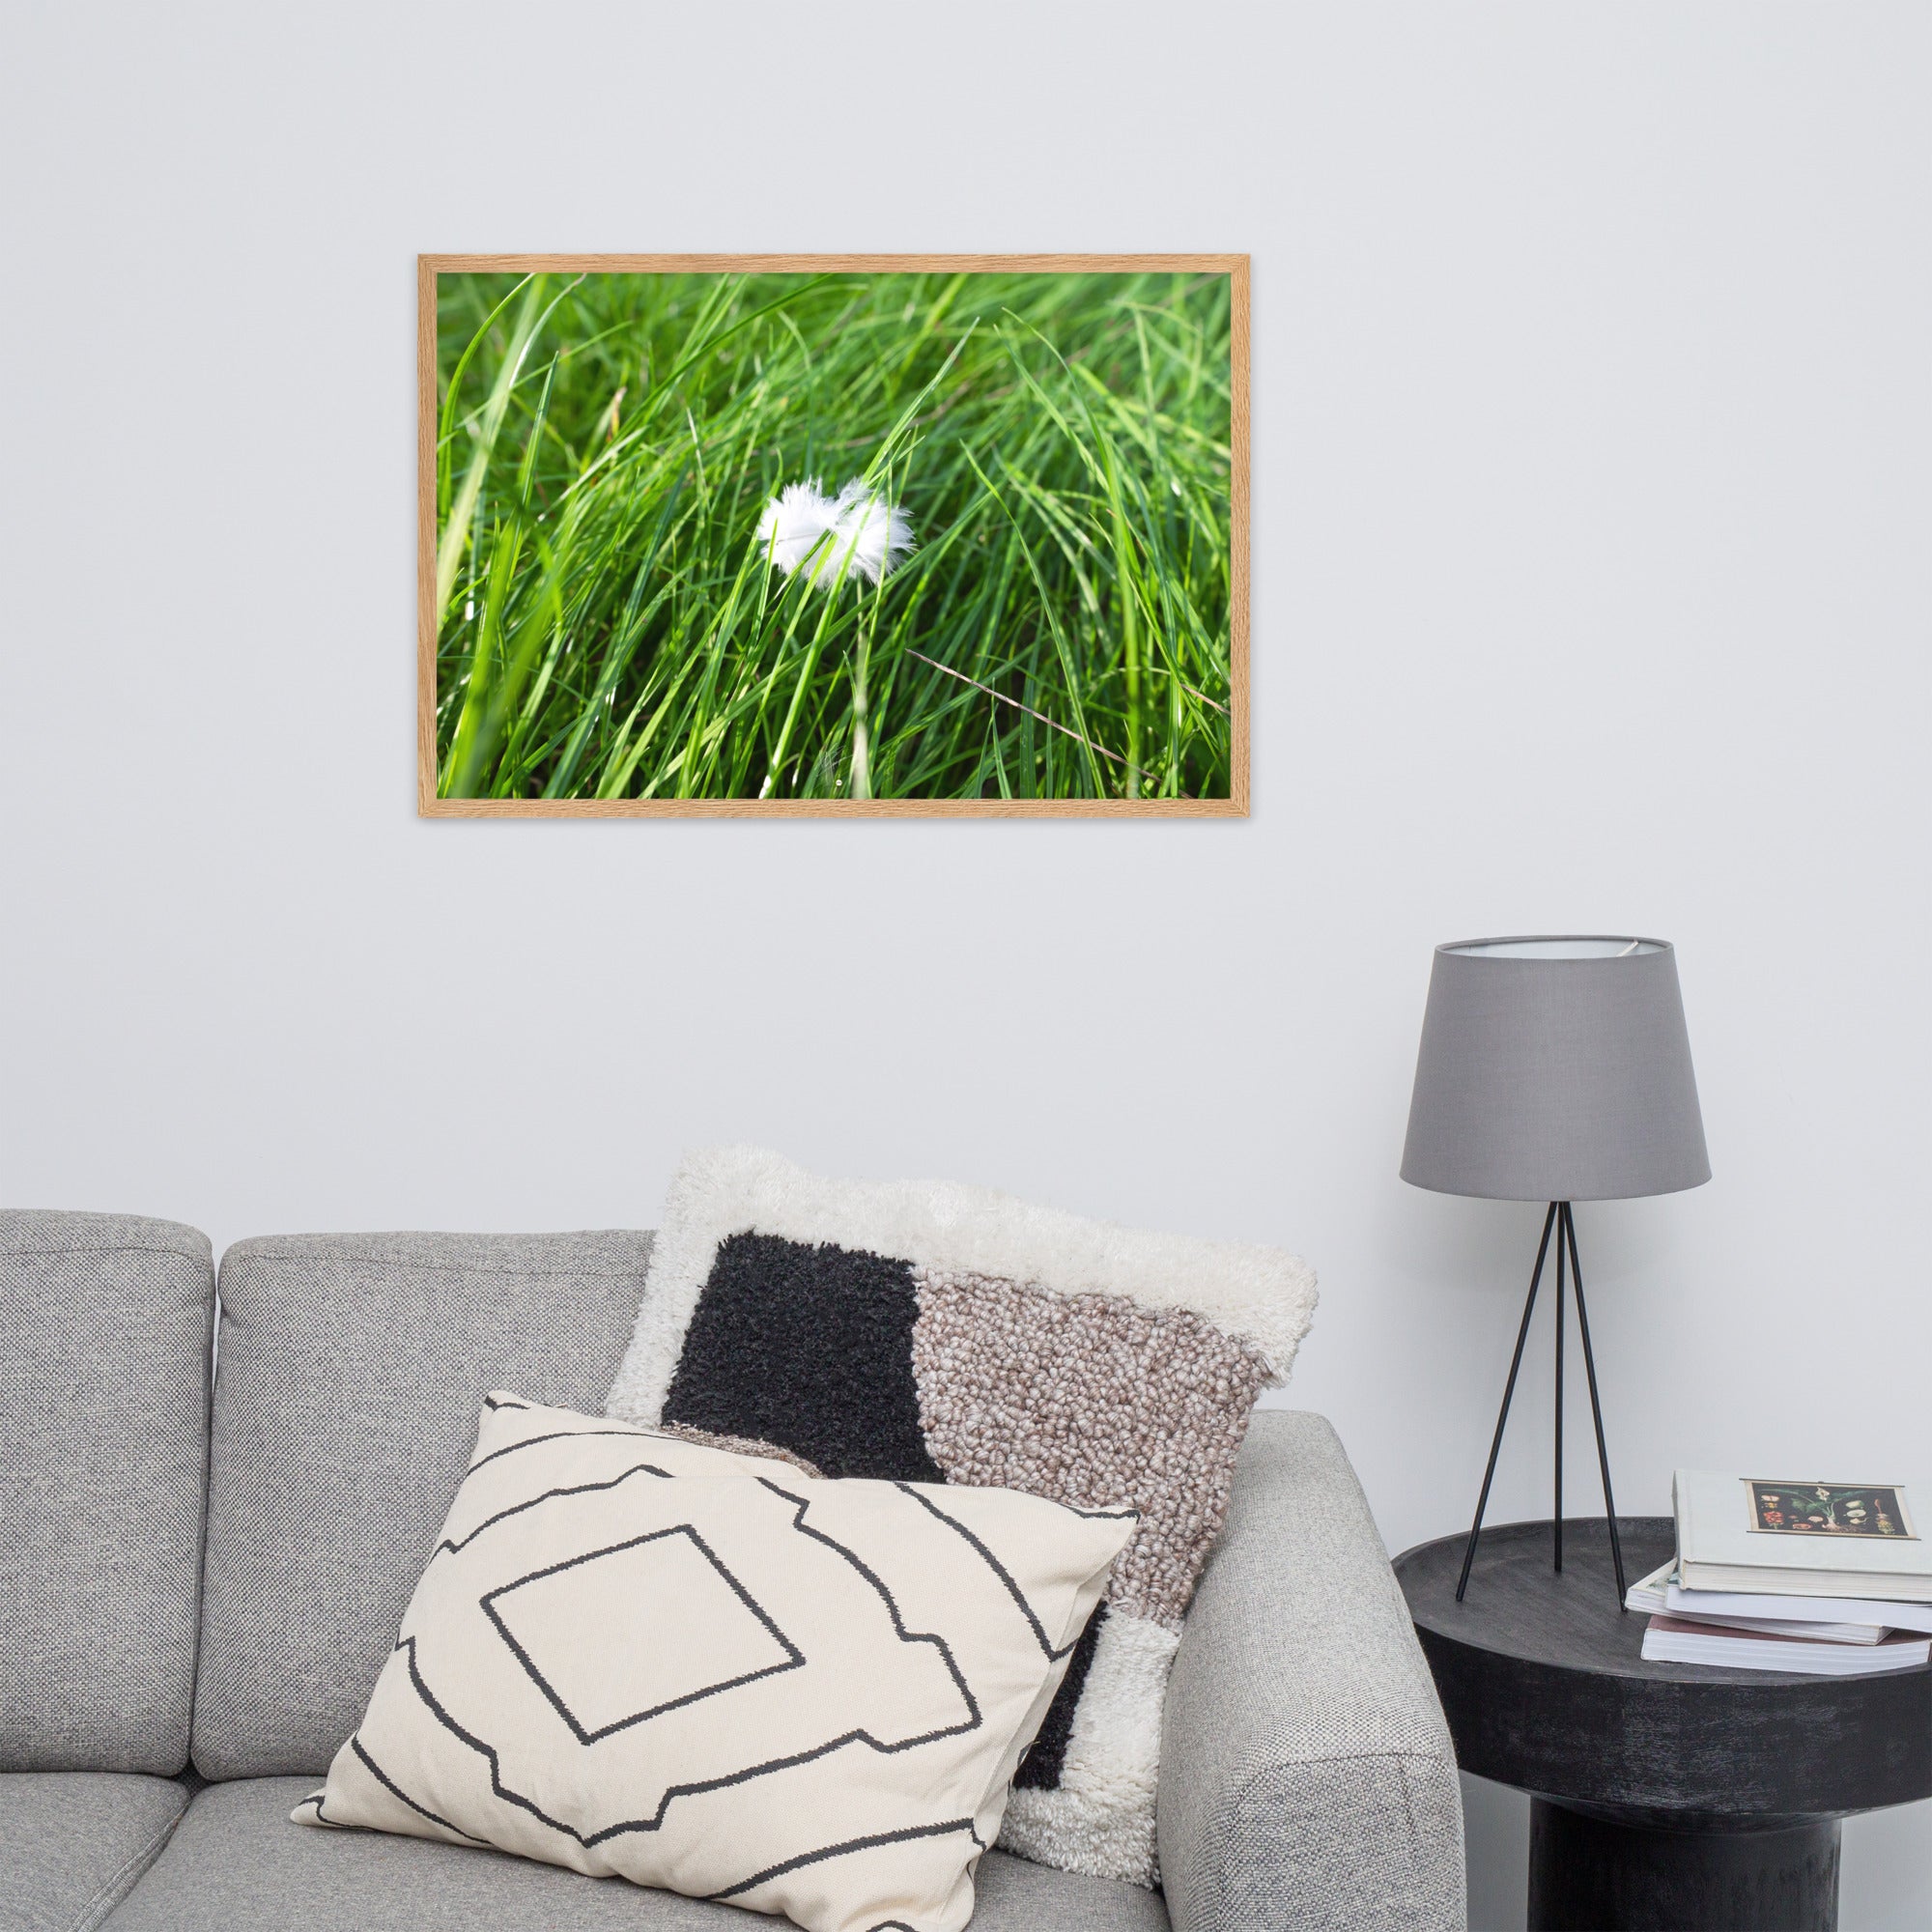 Photographie d'une plume blanche solitaire reposant paisiblement sur une herbe verte, encapsulant une ambiance de calme et de sérénité.